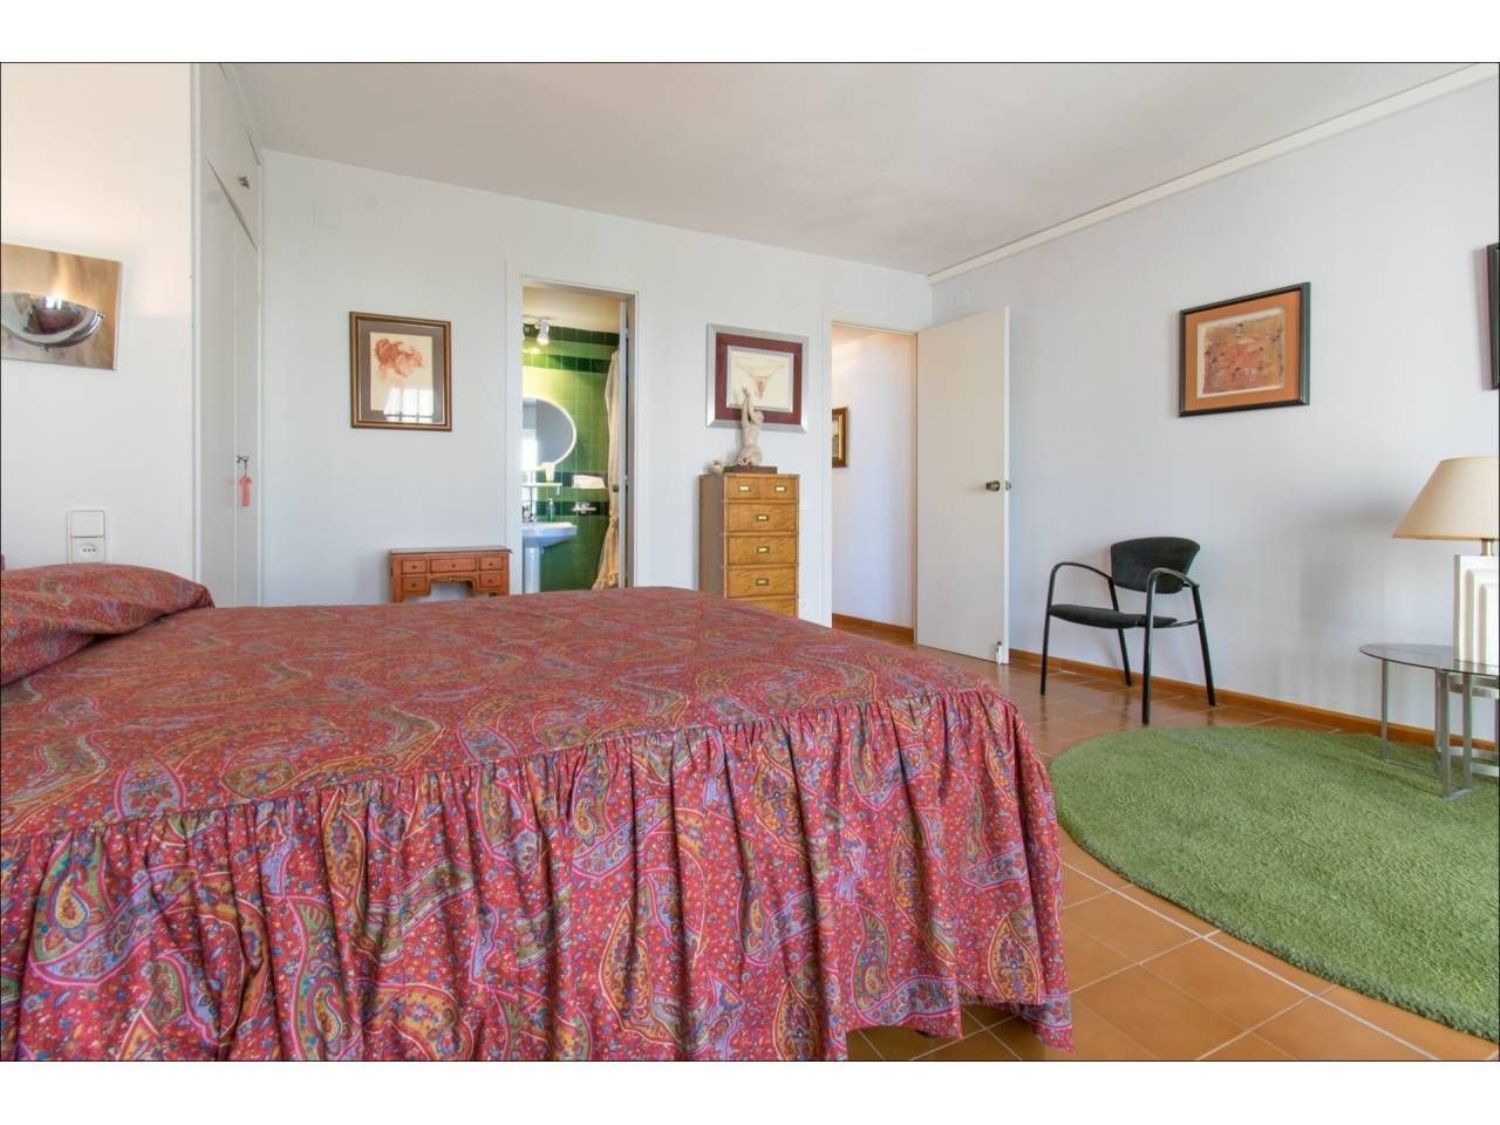 Vende-se apartamento na primeira linha do mar no Paseo de la Ribera, em Sitges